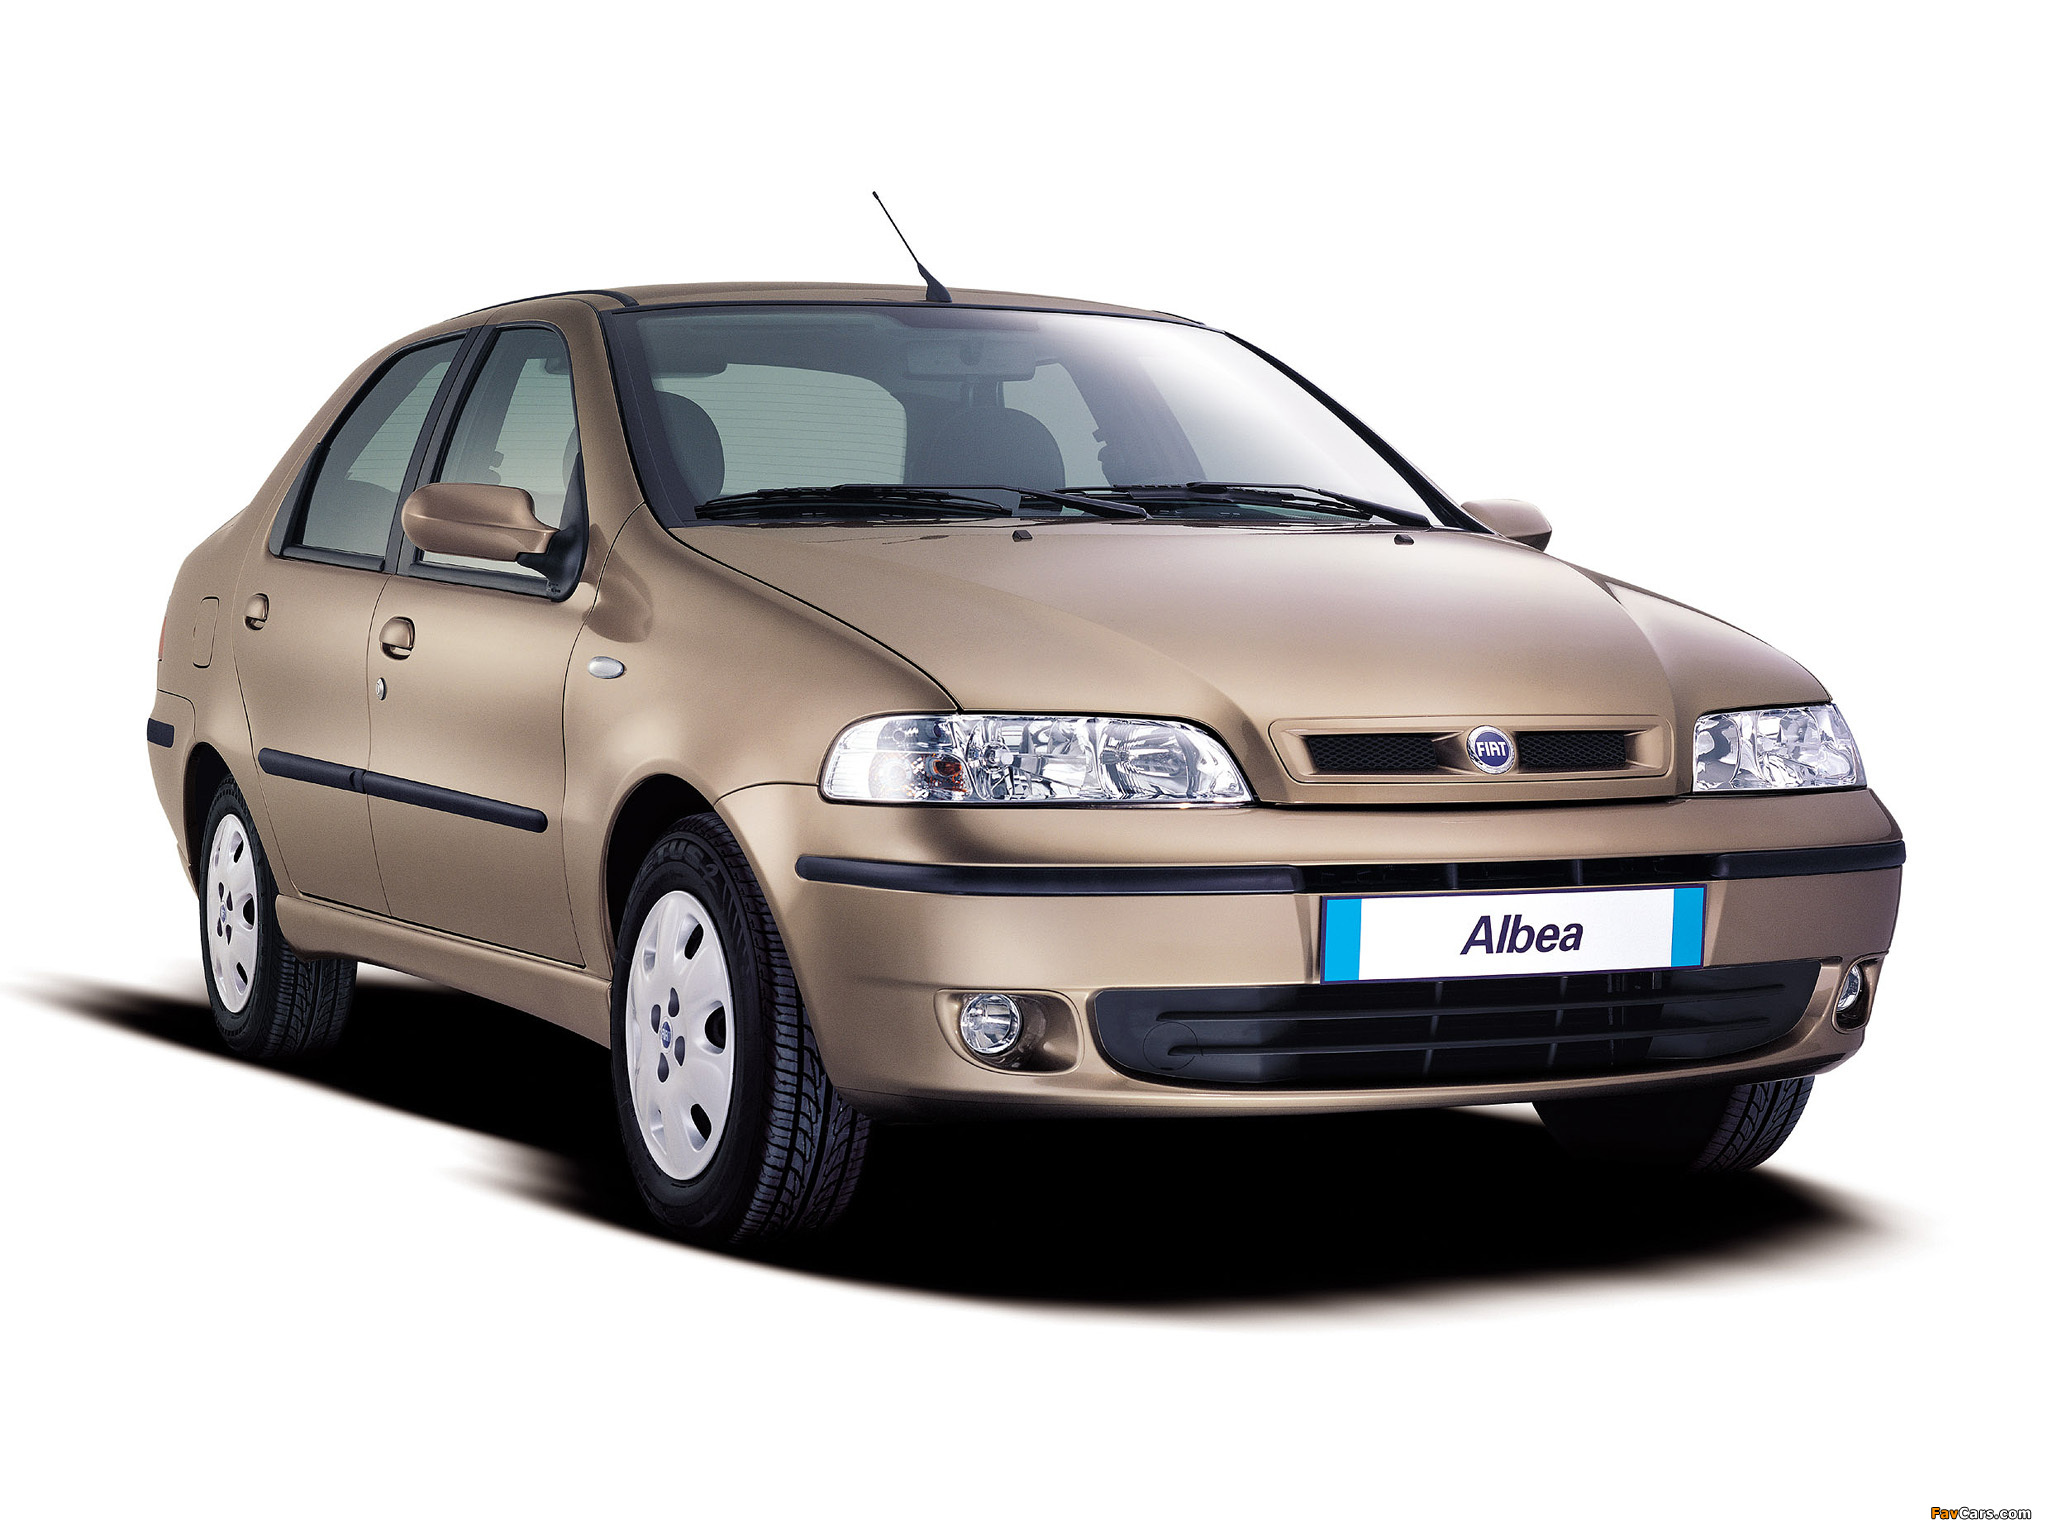 Images of Fiat Albea 200204 (2048x1536)